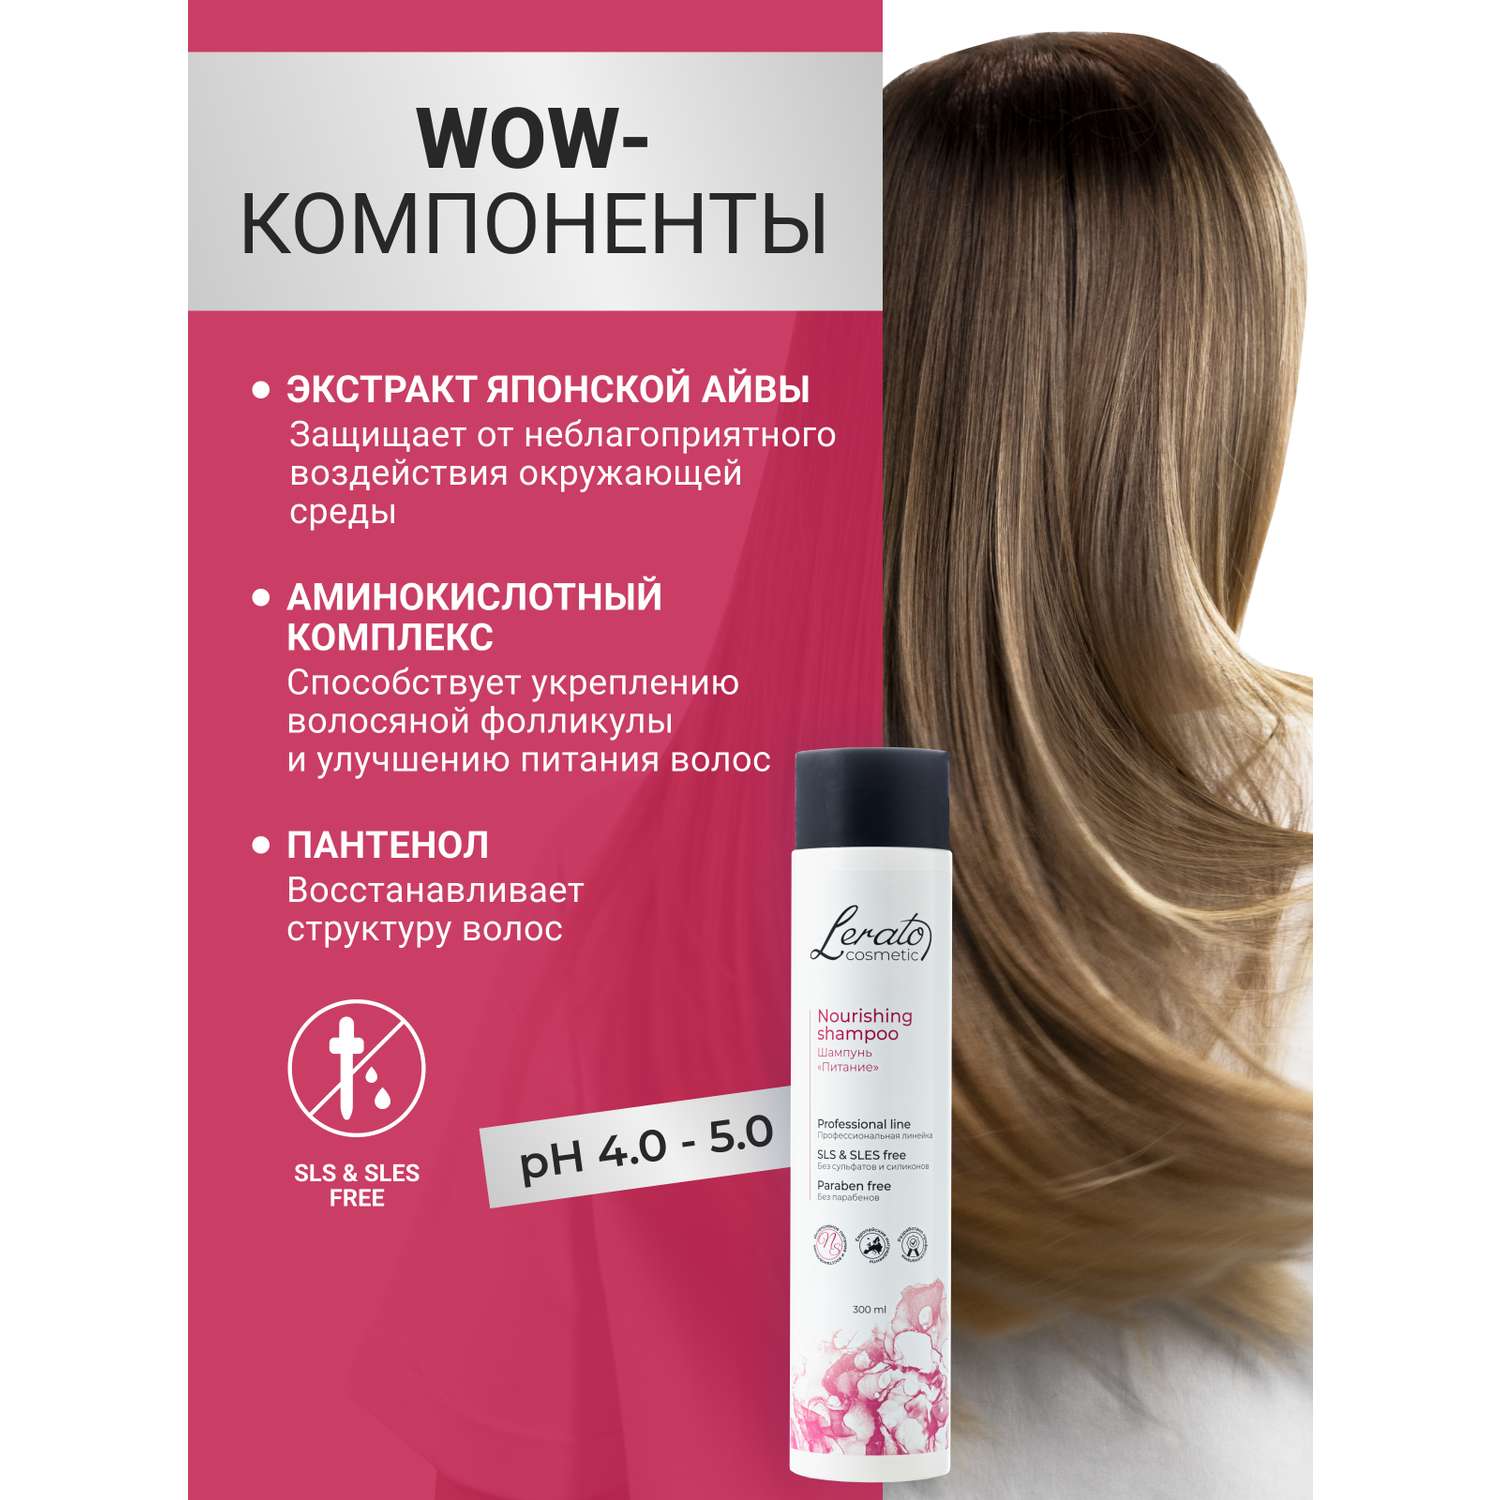 Шампунь для волос женский Lerato Cosmetic бессульфатный для восстановления 300 мл - фото 5